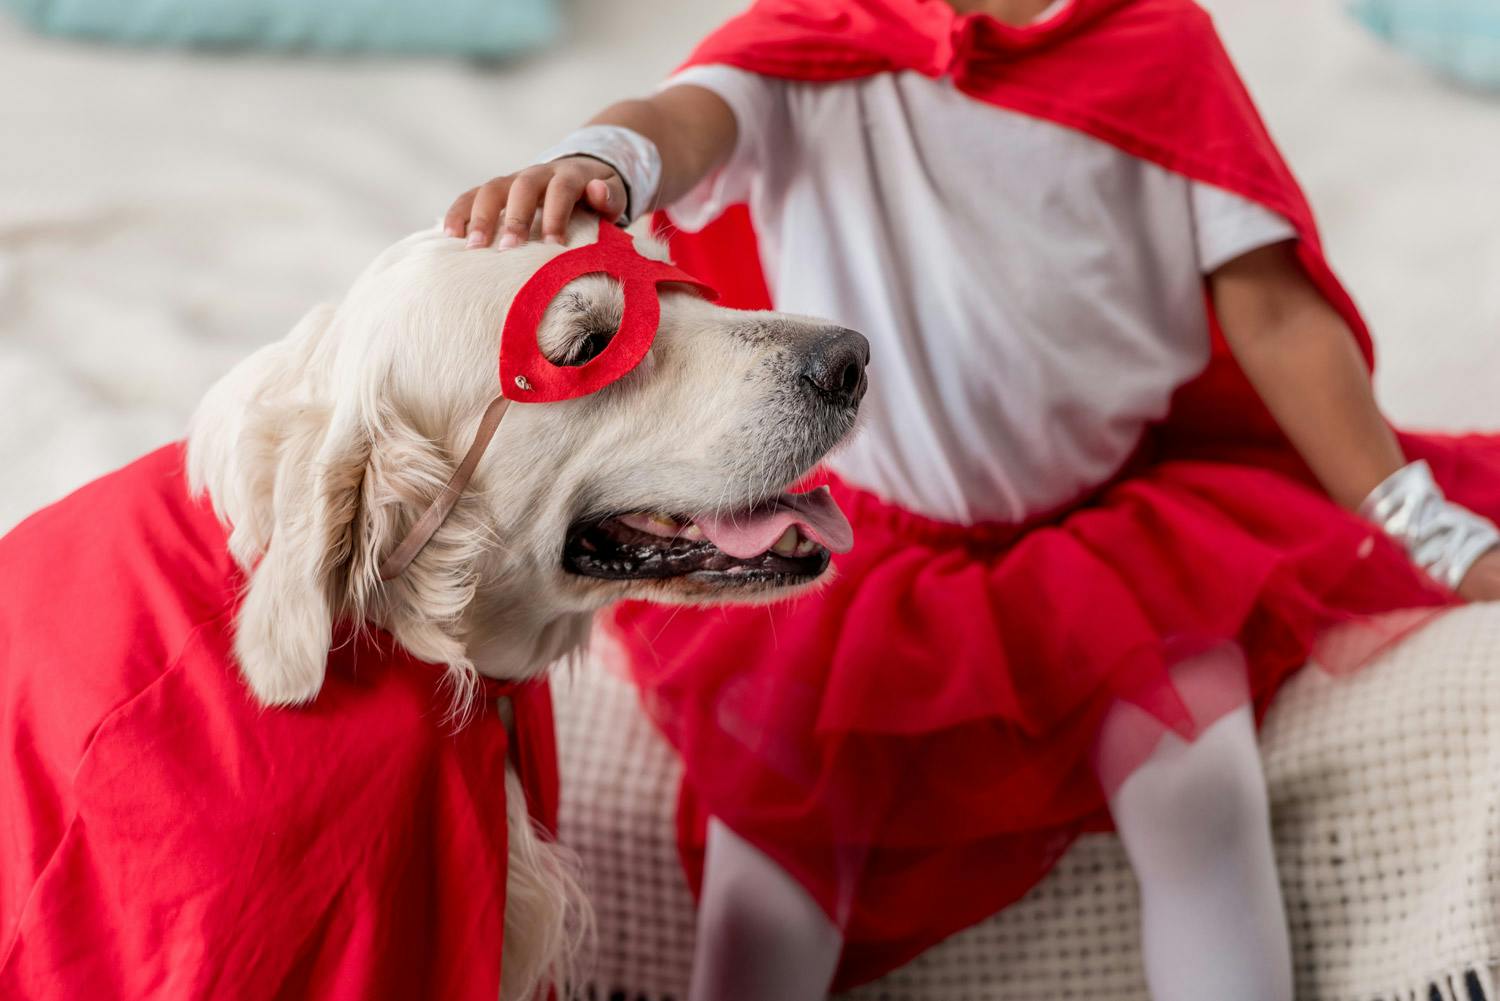  Hond en klein kind in rood superheldenkostuum